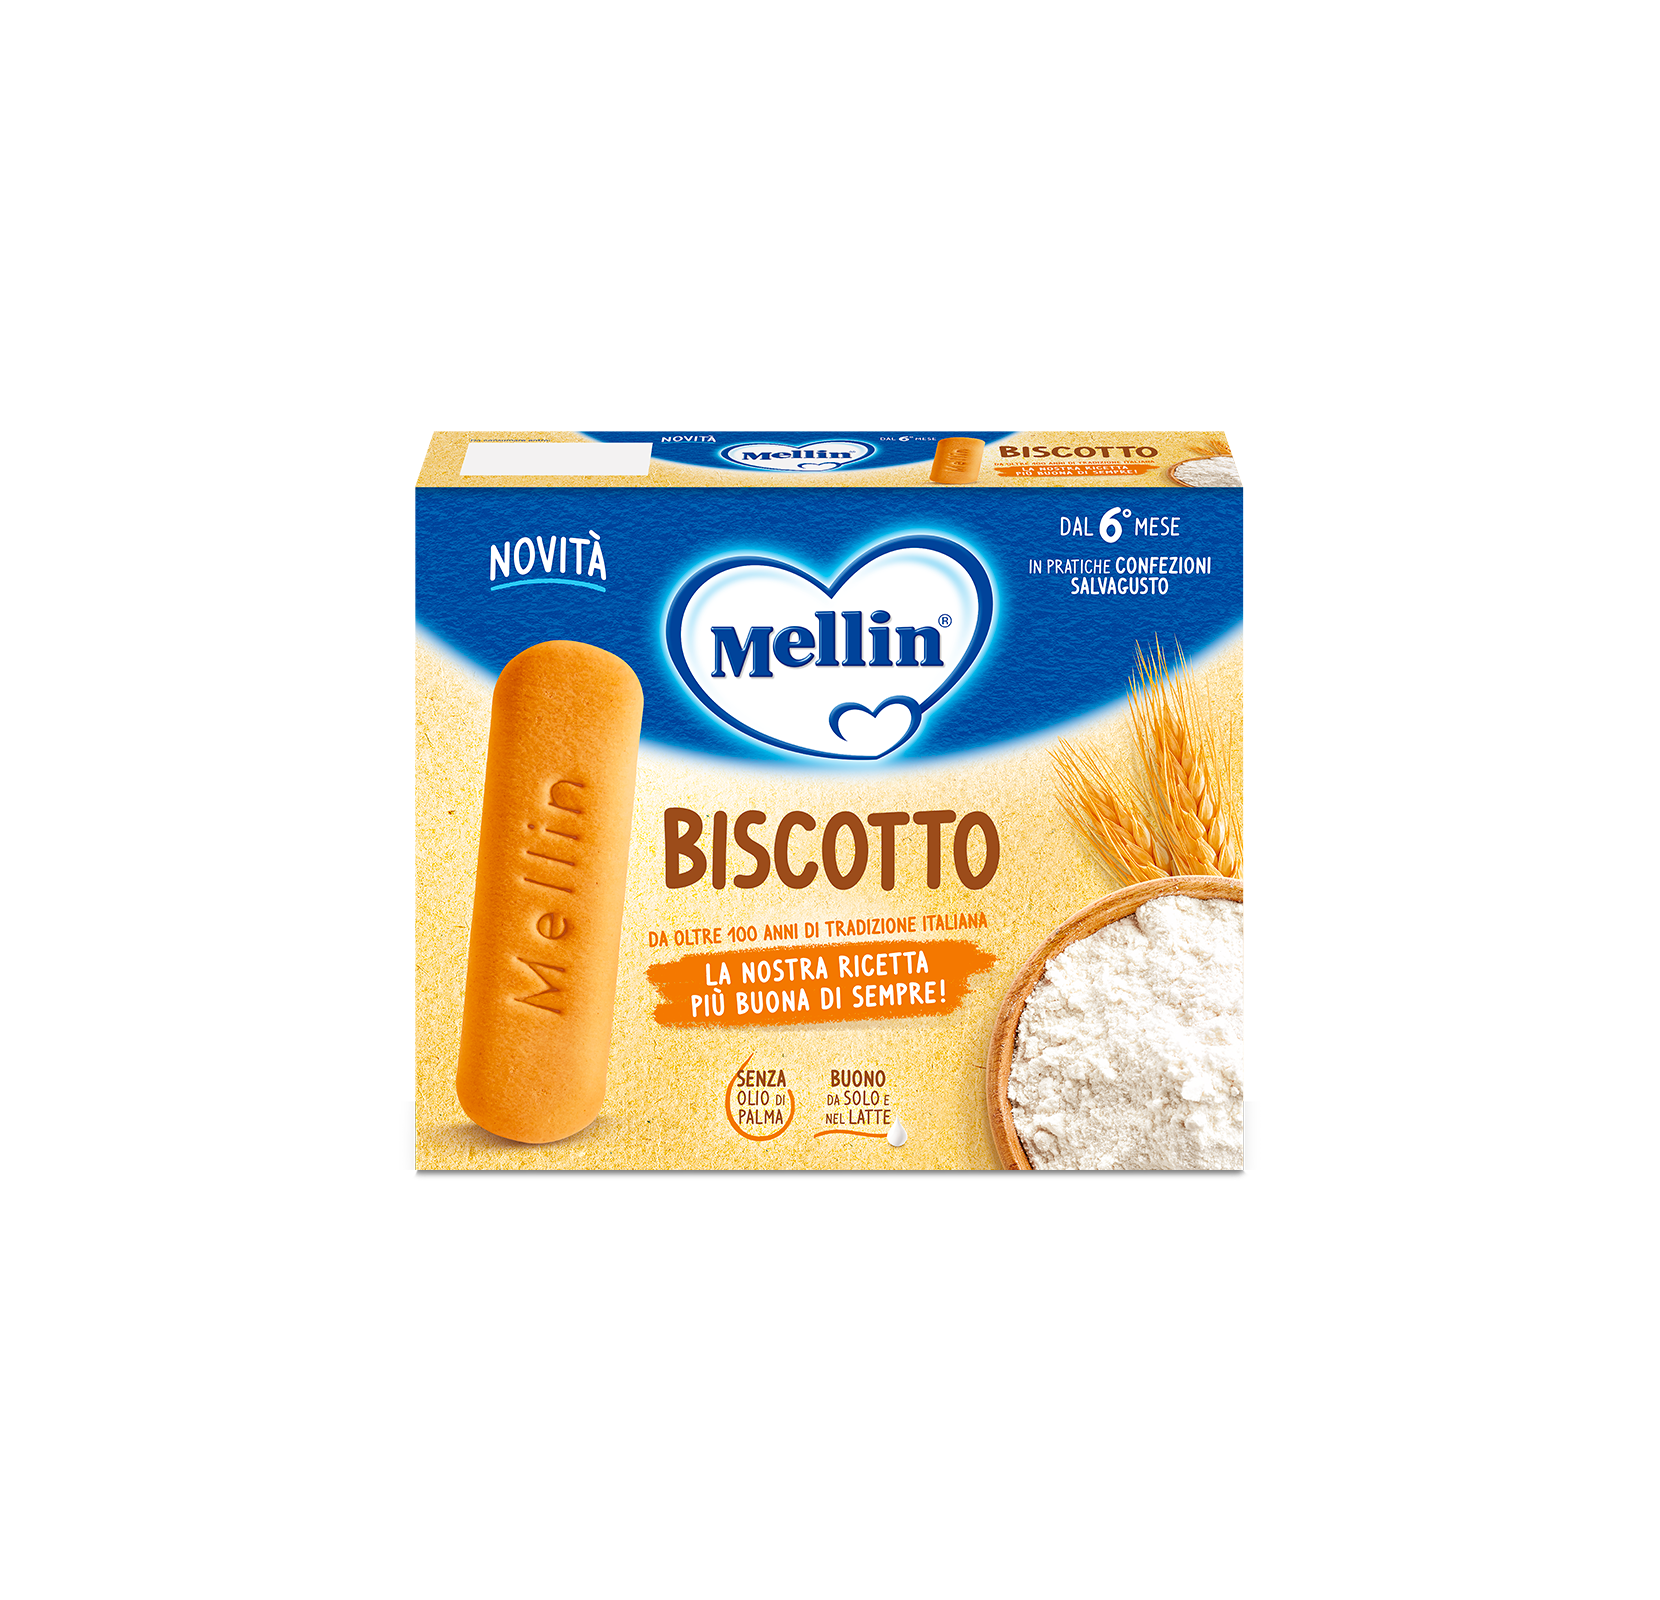 Biscotto - Biscotto Classico Mellin 360 g
